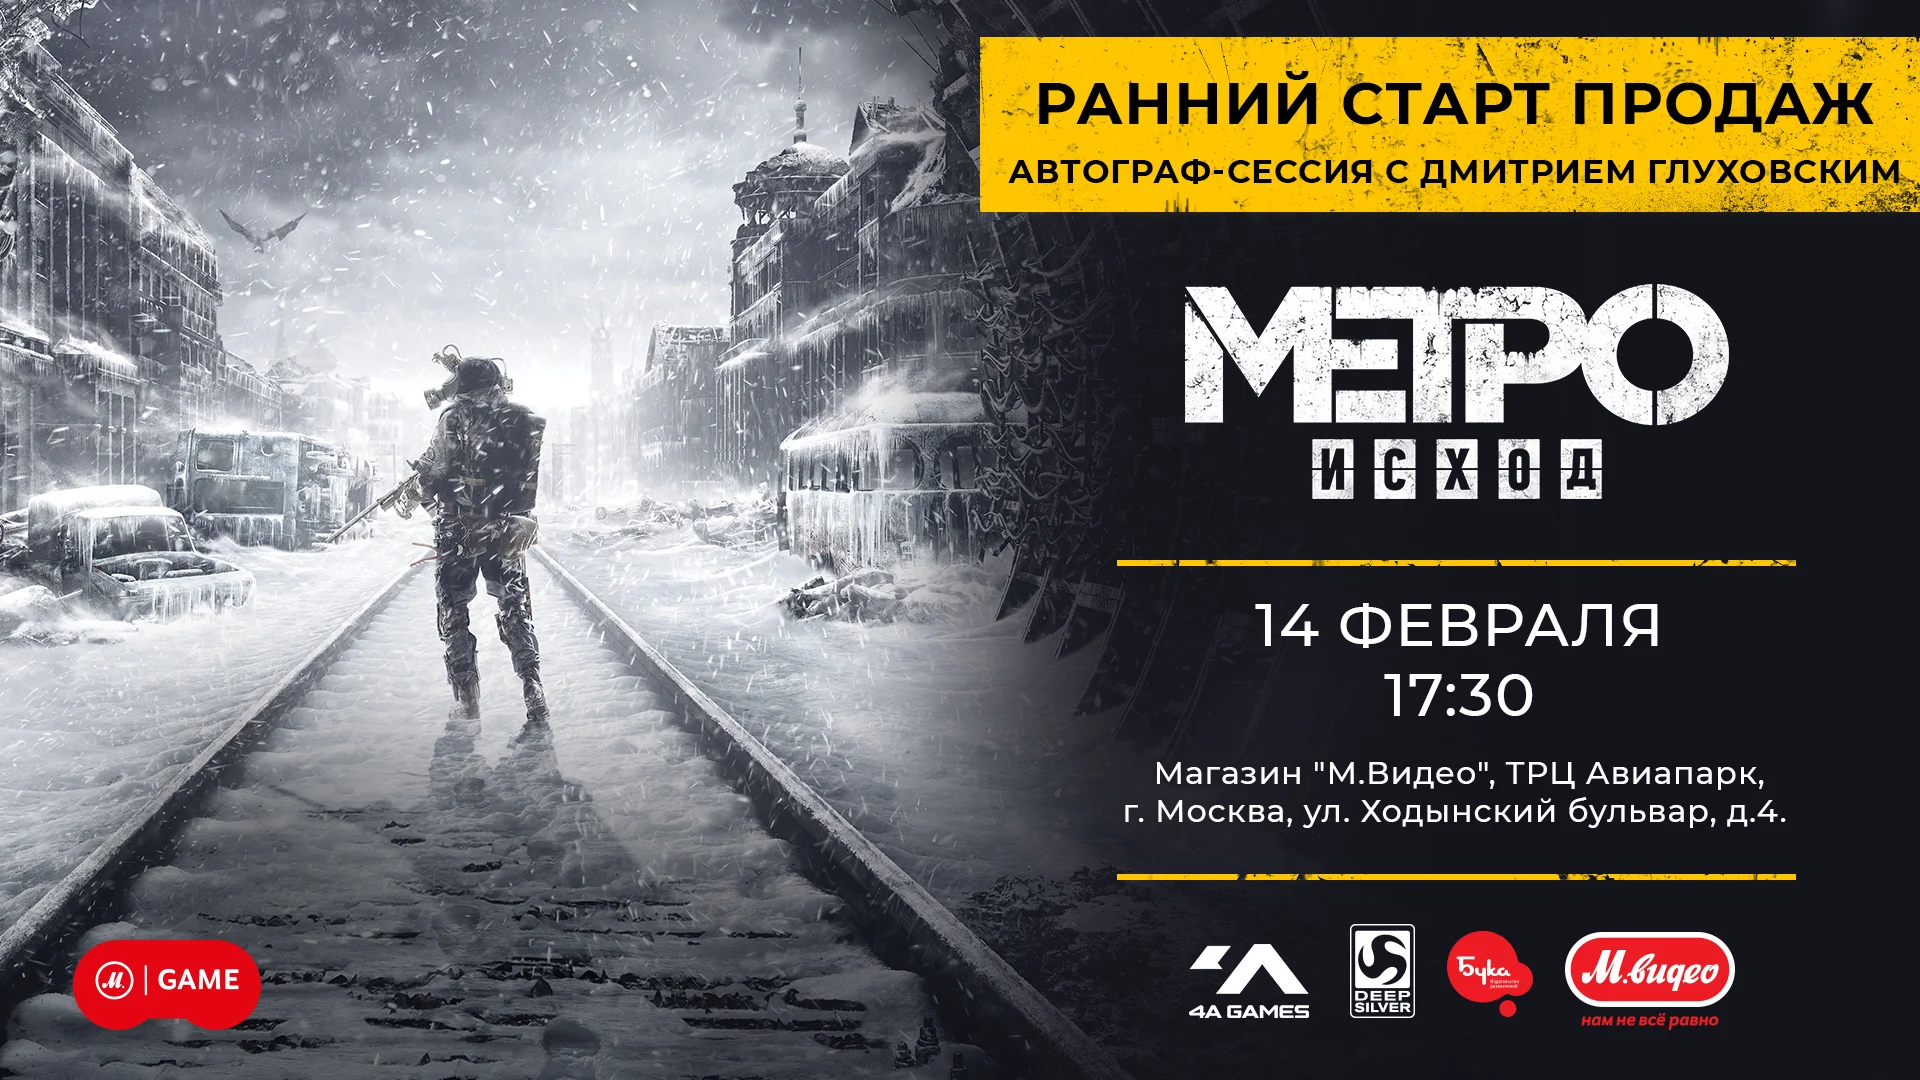 «Он то кричит, то говорит спокойно». Как Metro: Exodus озвучивали на русский — в новом ролике